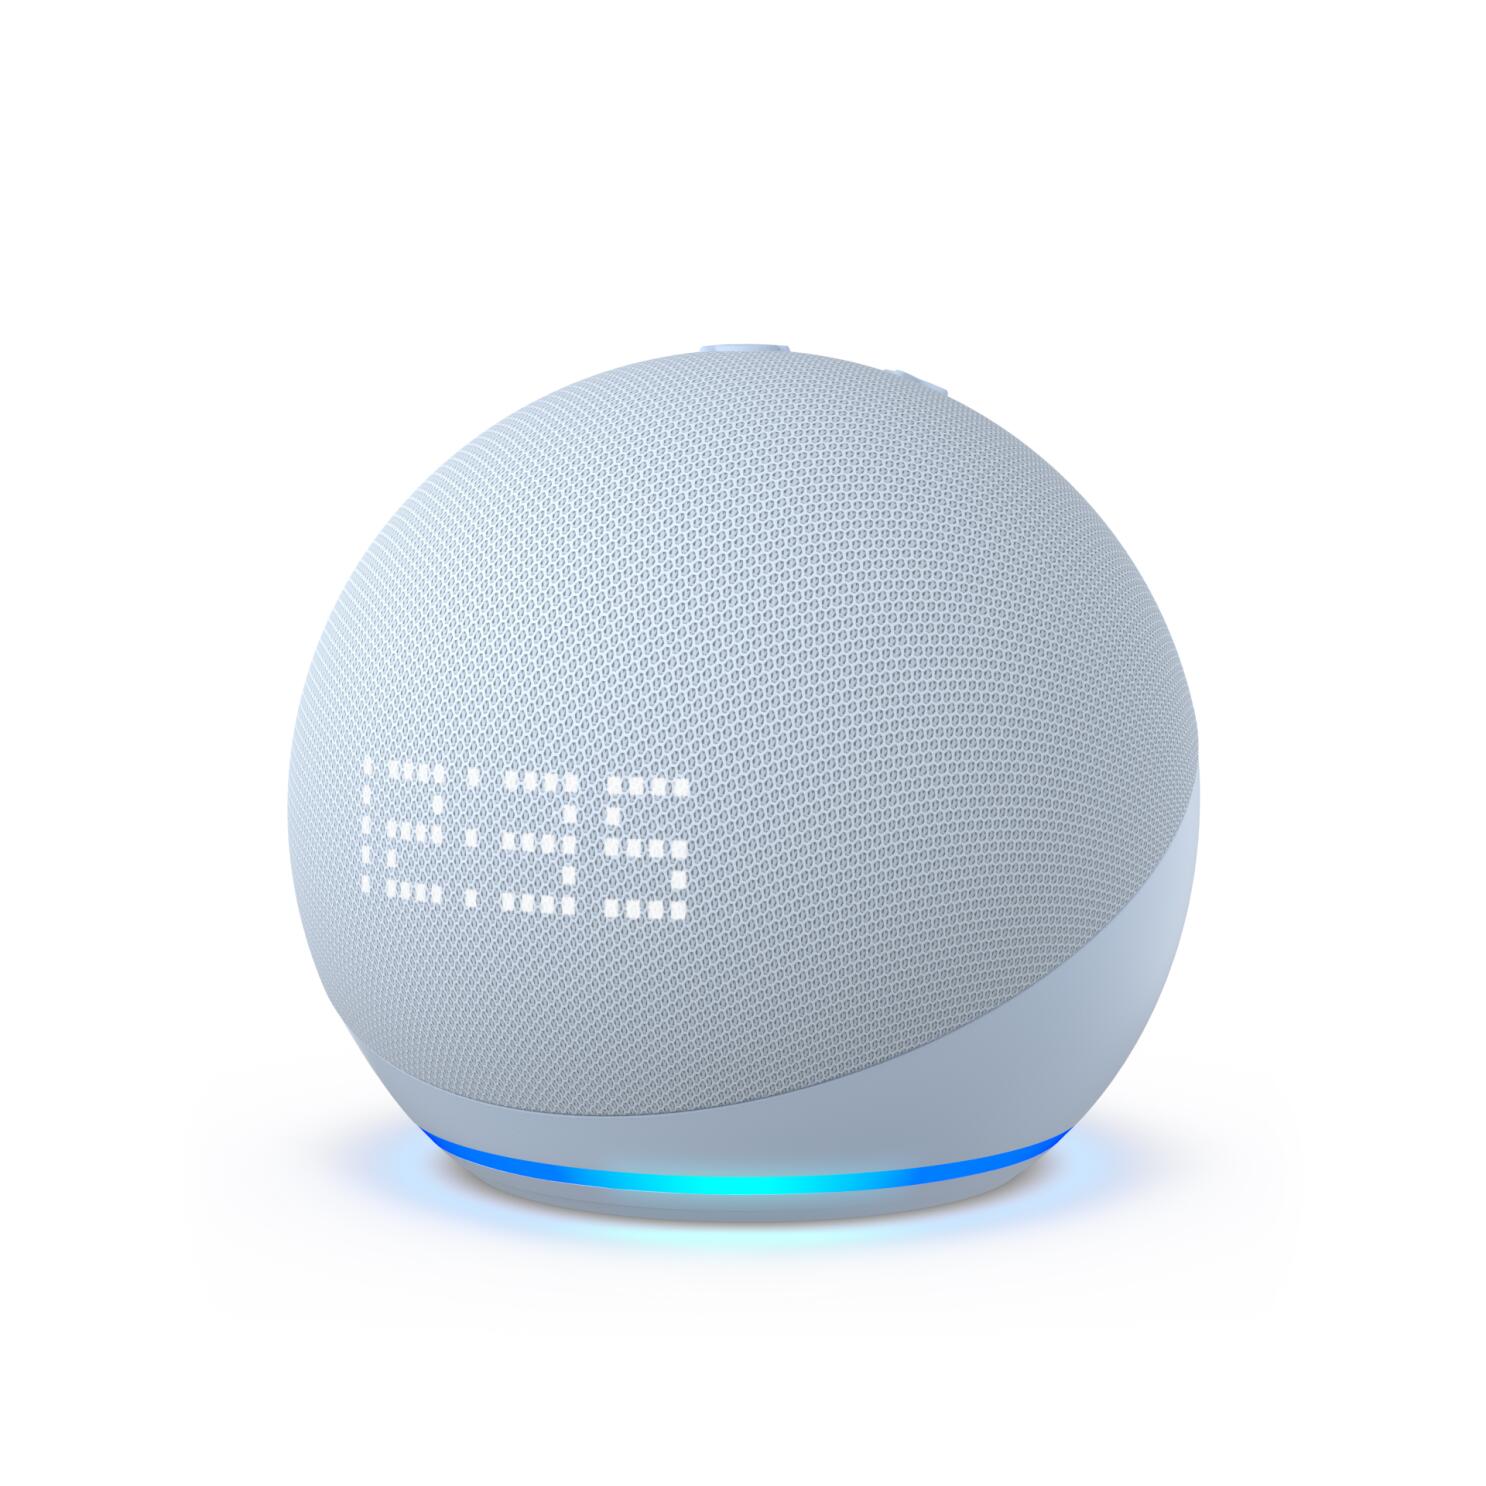 El altavoz inteligente Echo Dot con reloj ya está rebajado un 36